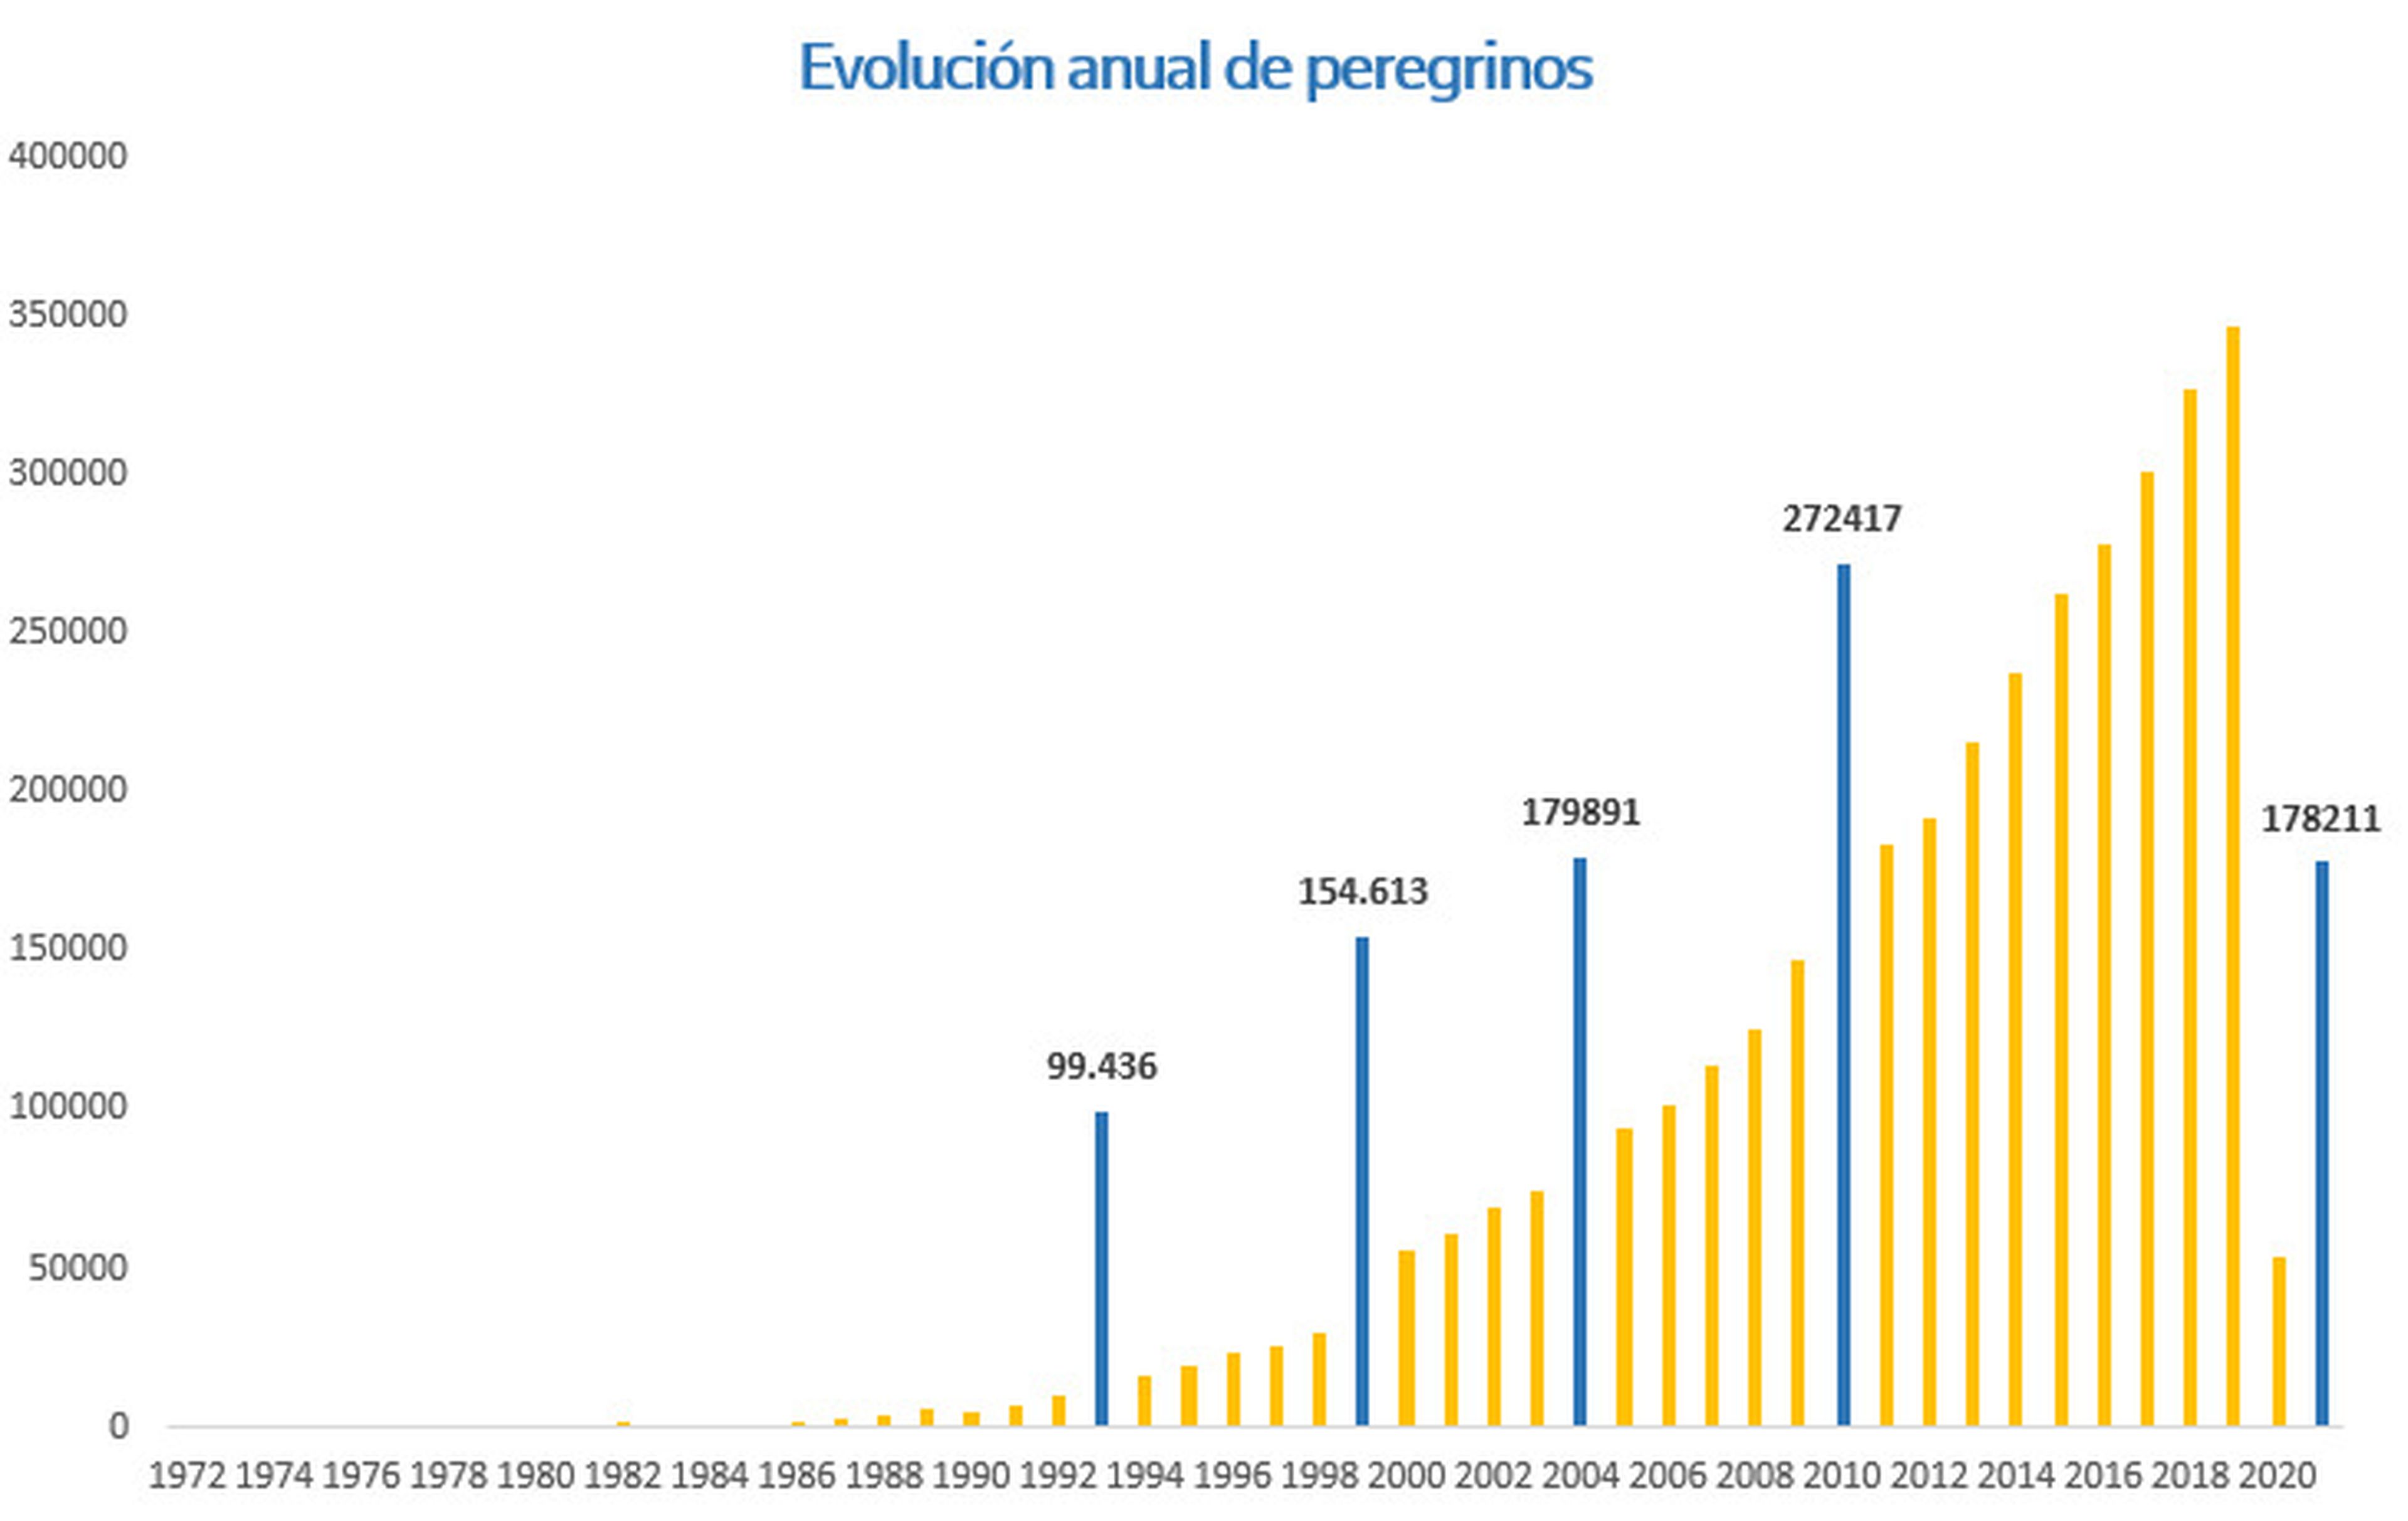 La cifra de peregrinos está al alza desde 1970, destaando especialmente el incremento en la última década a excepción de los años del COVID.